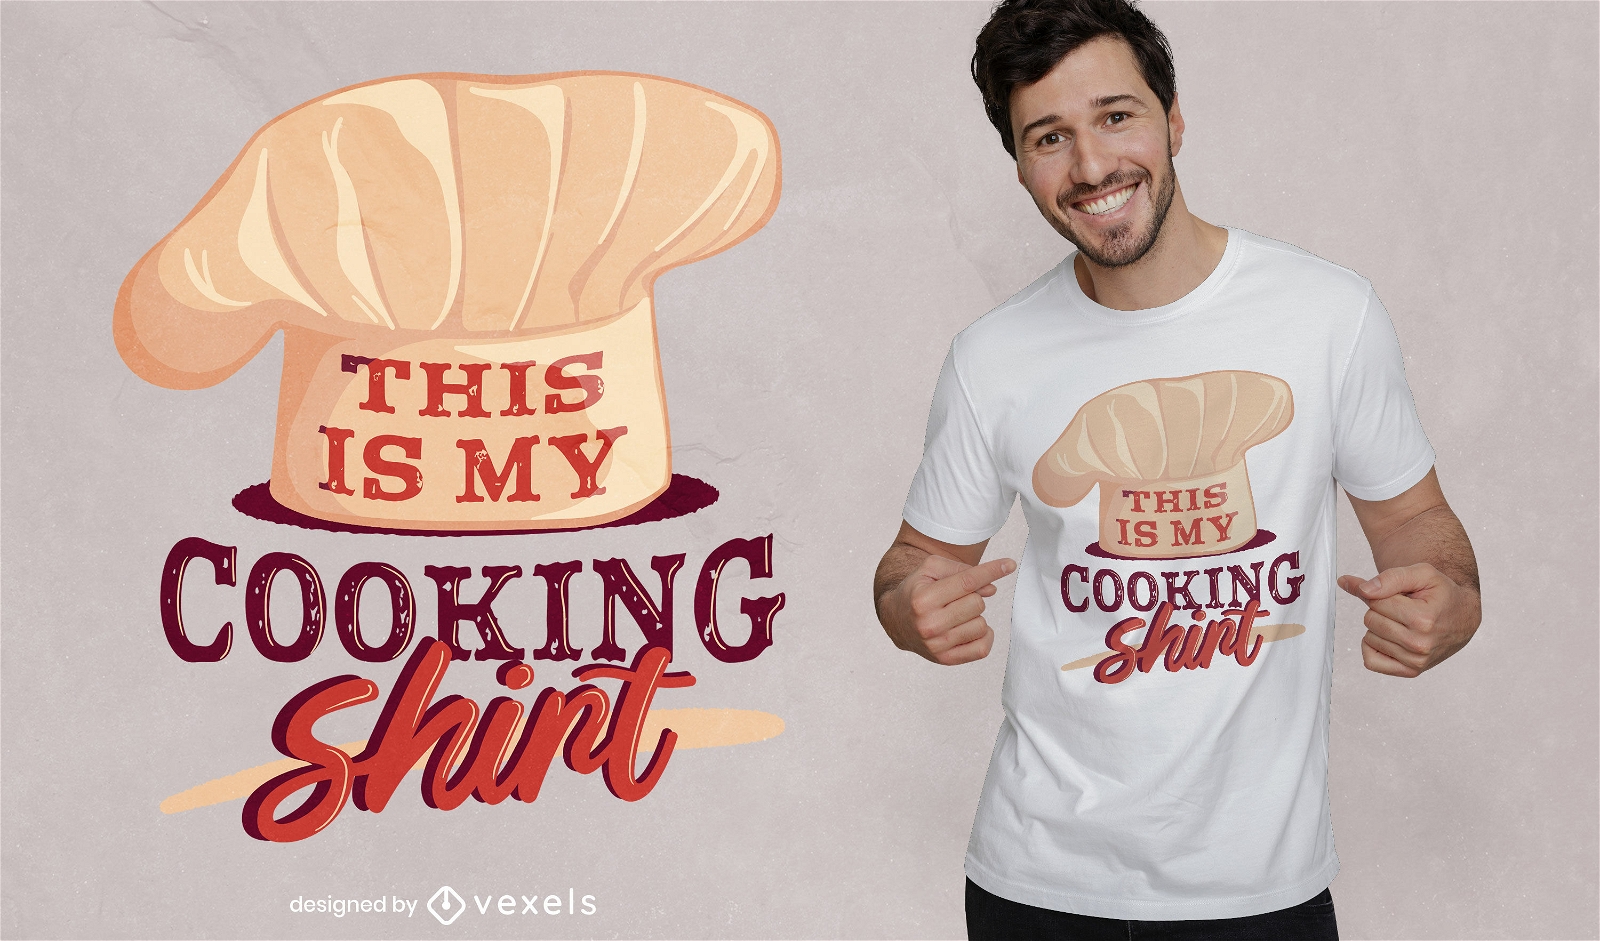 Impresionante dise?o de camiseta de camiseta de cocina.